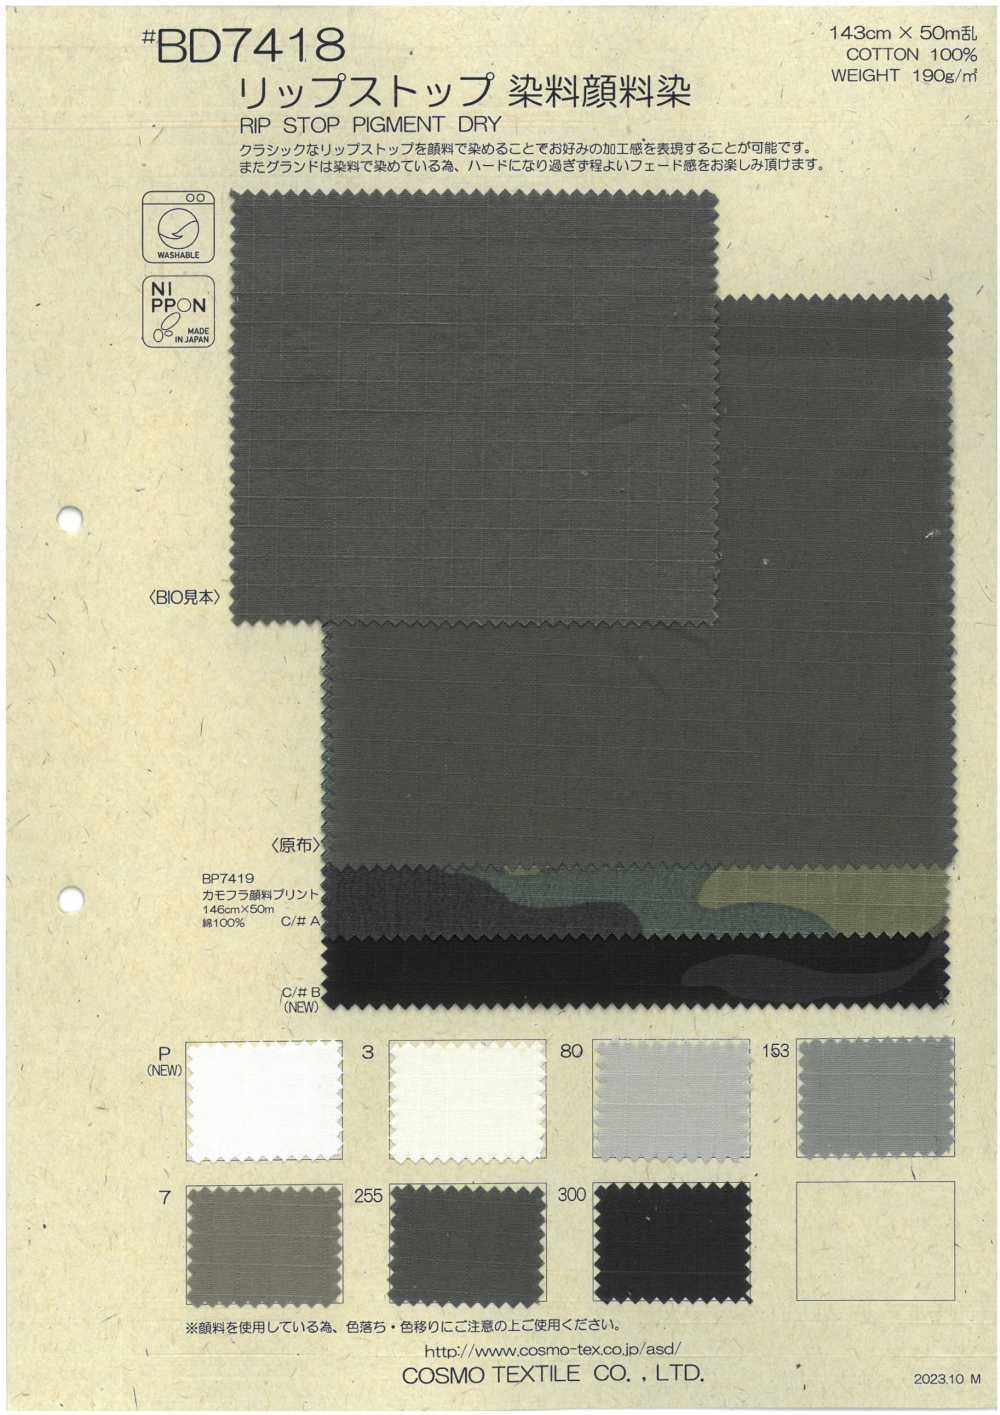 BD7418 Teñido De Pigmentos Con Tinte Ripstop[Fabrica Textil] COSMO TEXTILE